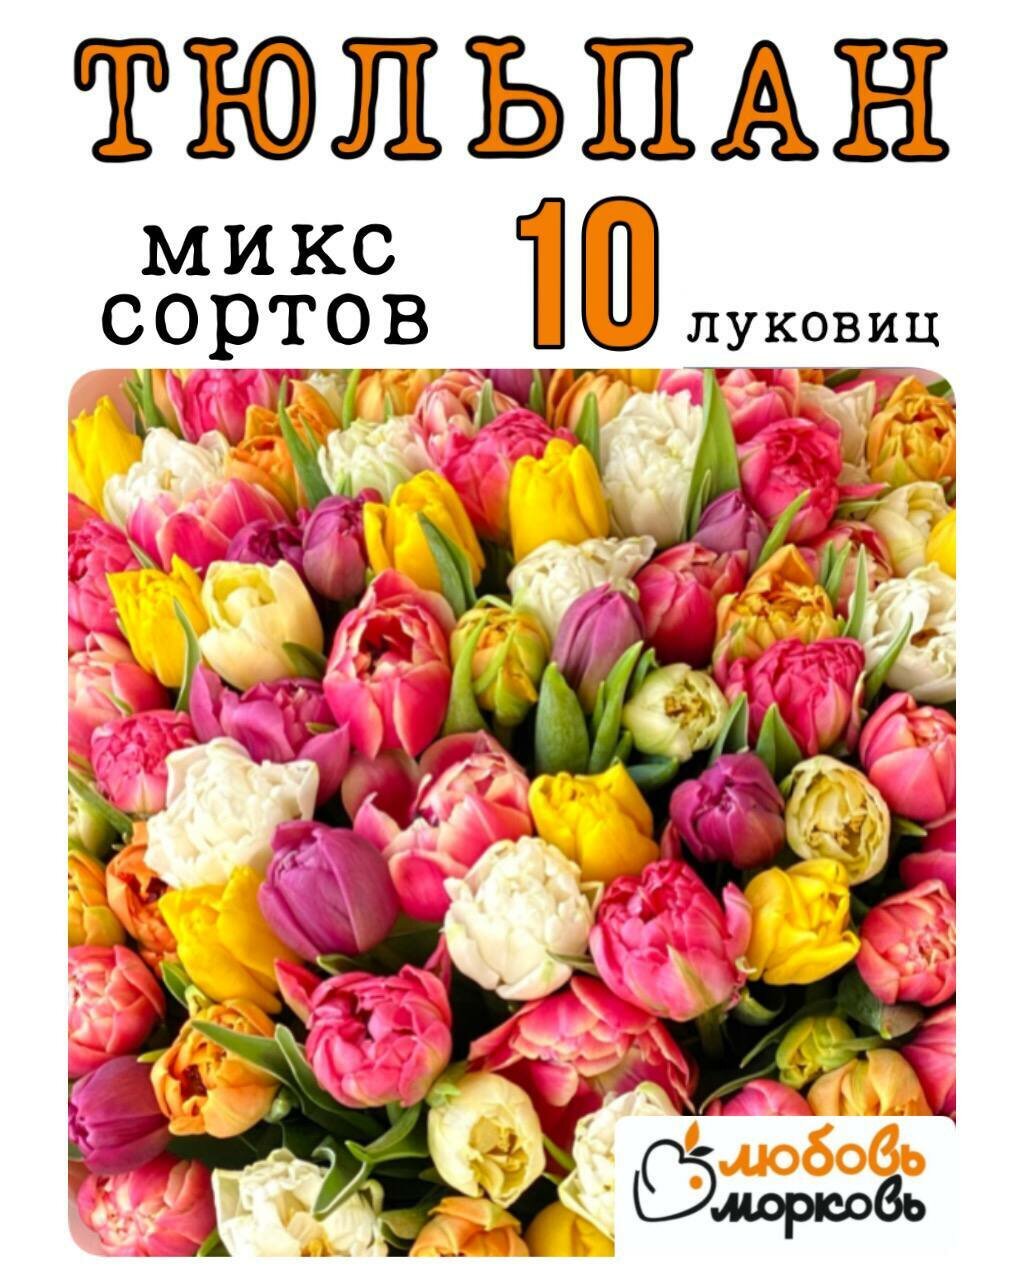 Тюльпан Луковица Микс сортов 10 шт (Любовь морковь) (Любовь морковь)